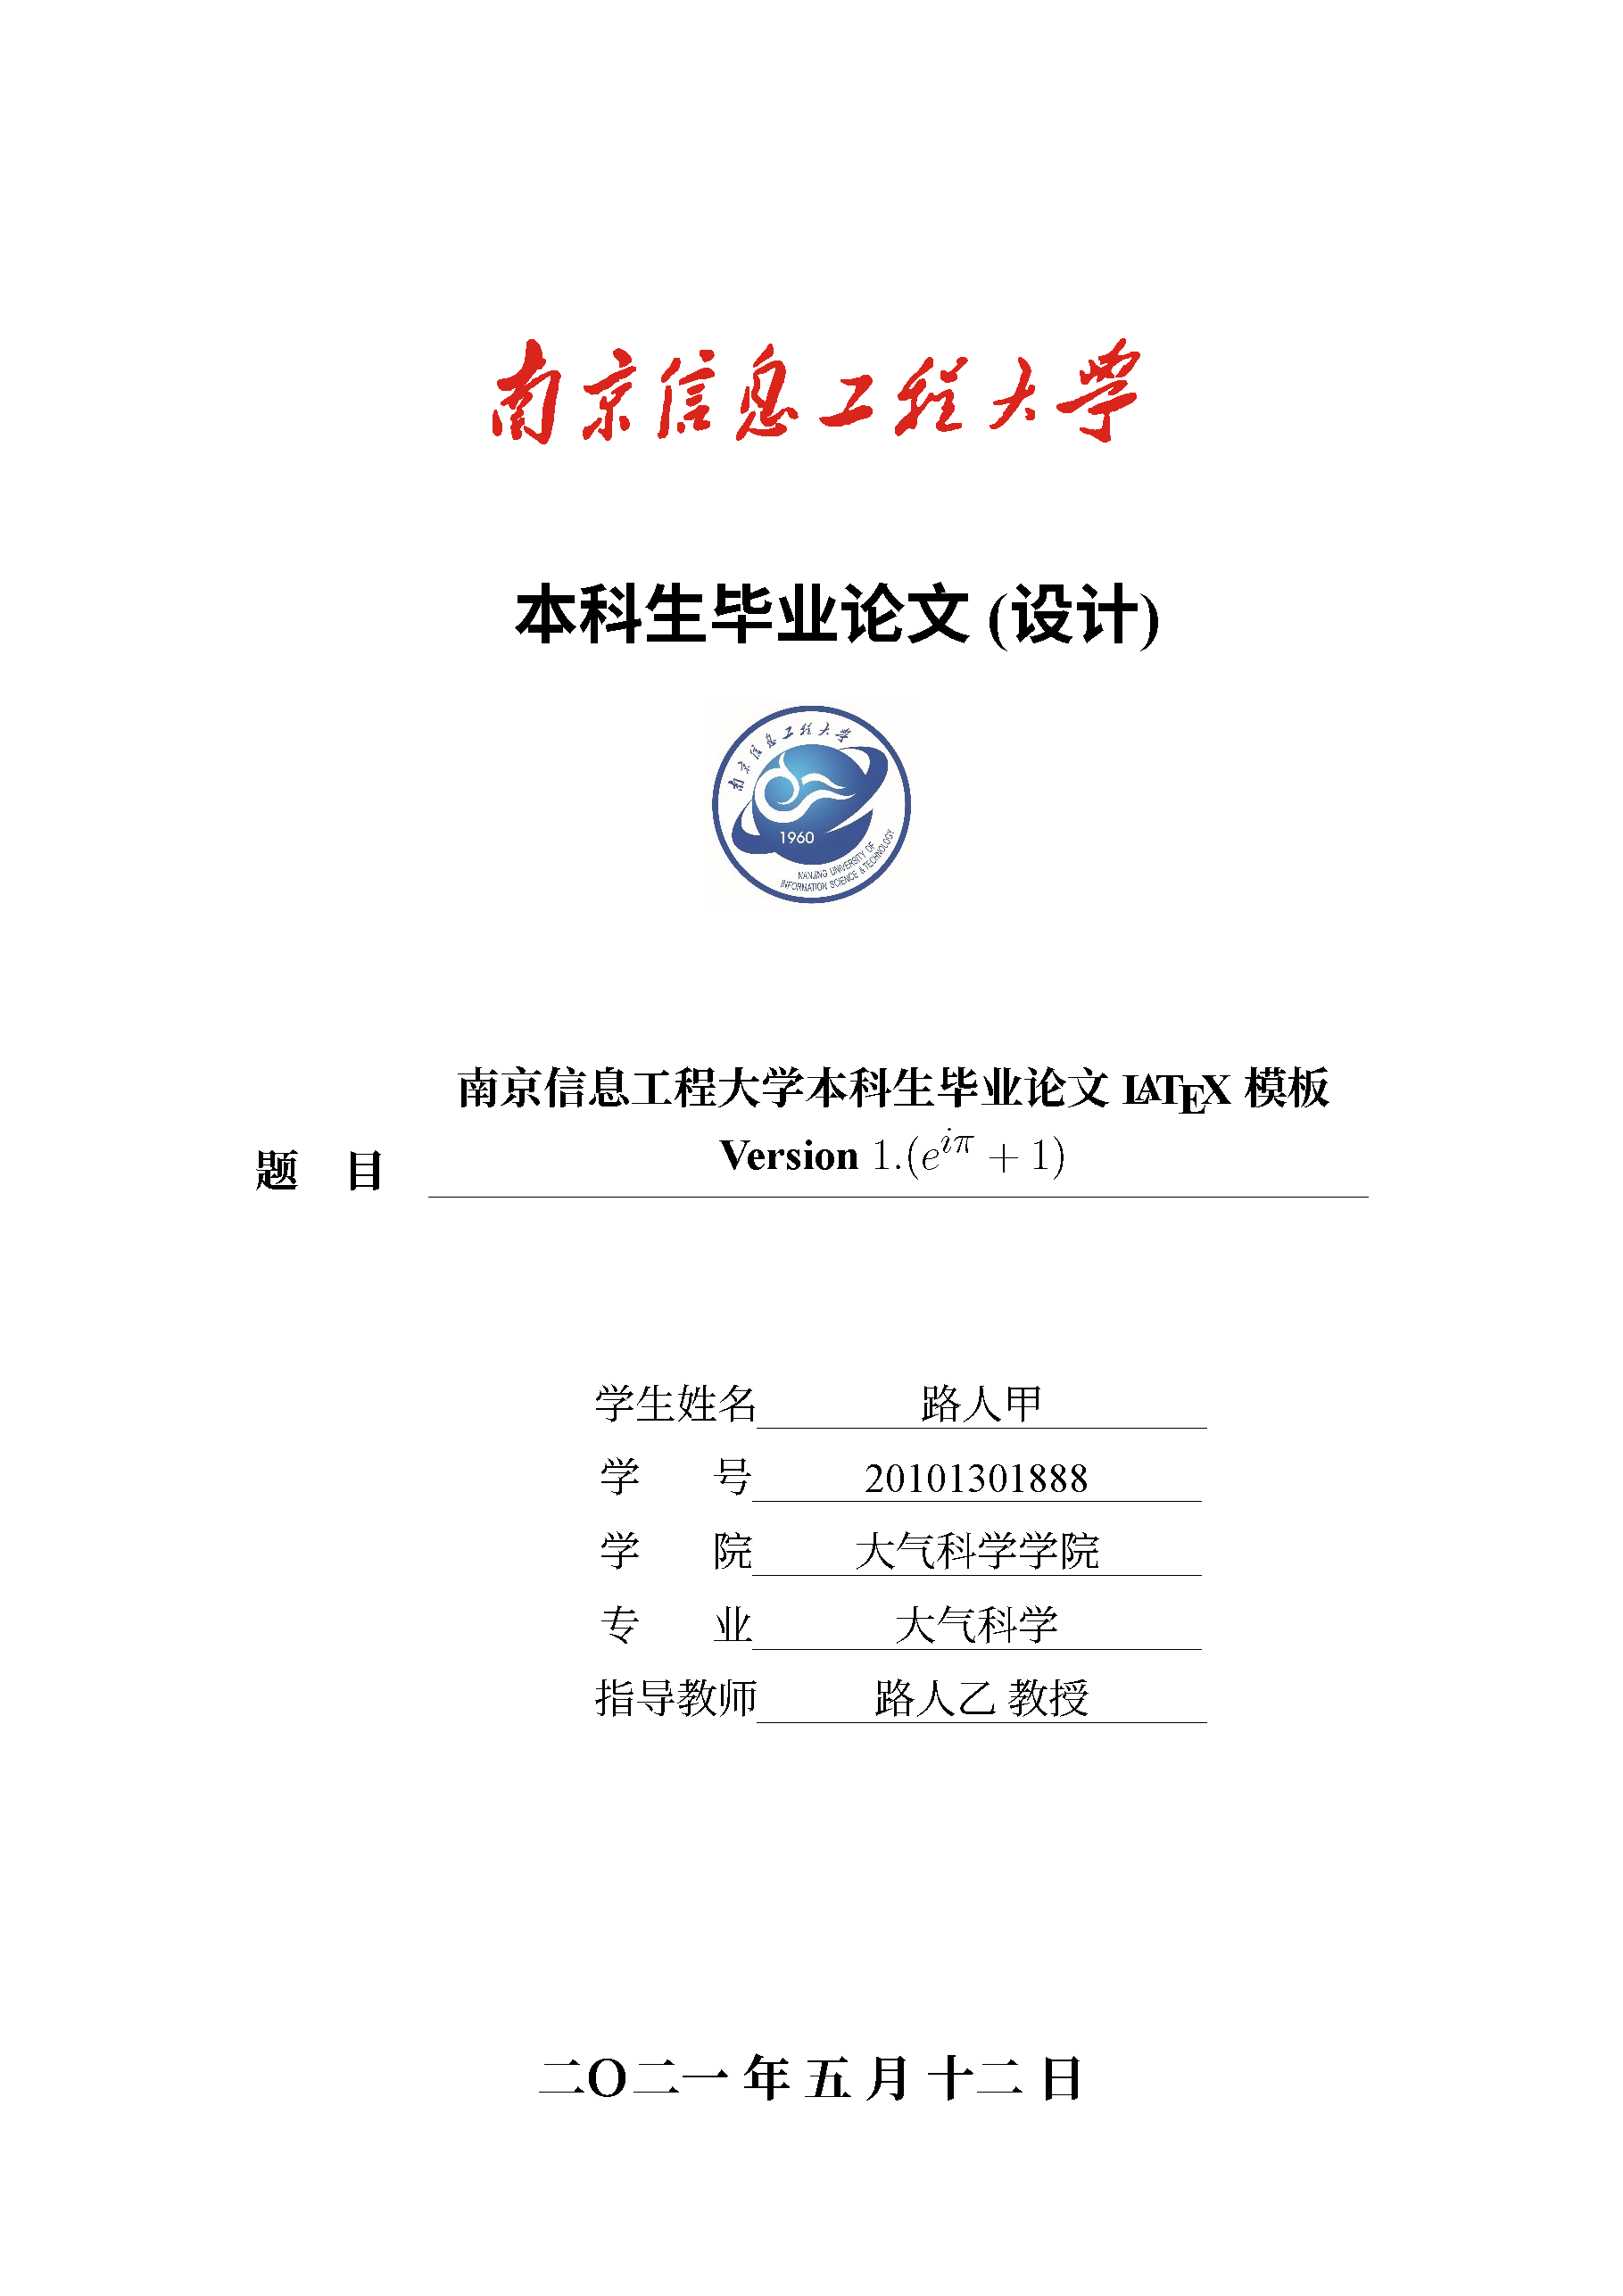 南京信息工程大学LaTeX毕业论文模板V3.1更新 (无需依赖CTeX软件，修复了复制文字乱码的问题）